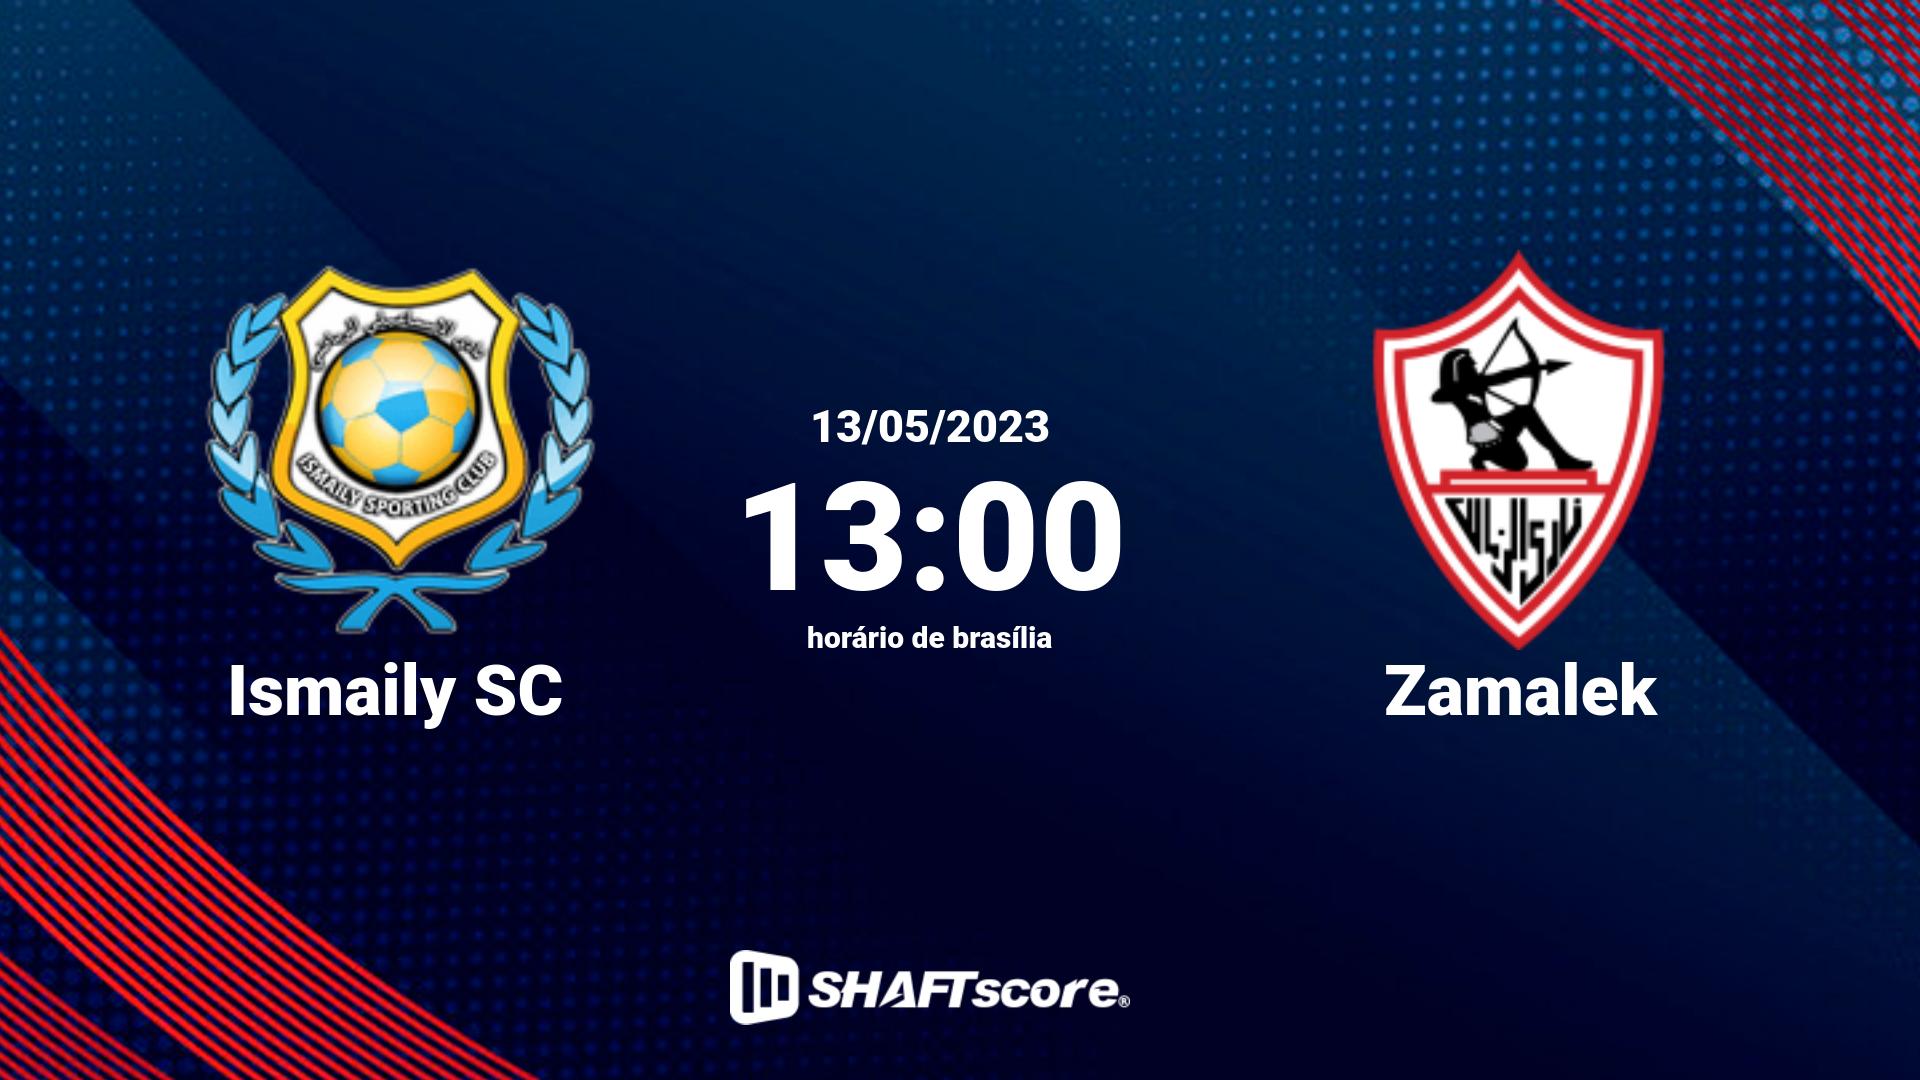 Estatísticas do jogo Ismaily SC vs Zamalek 13.05 13:00